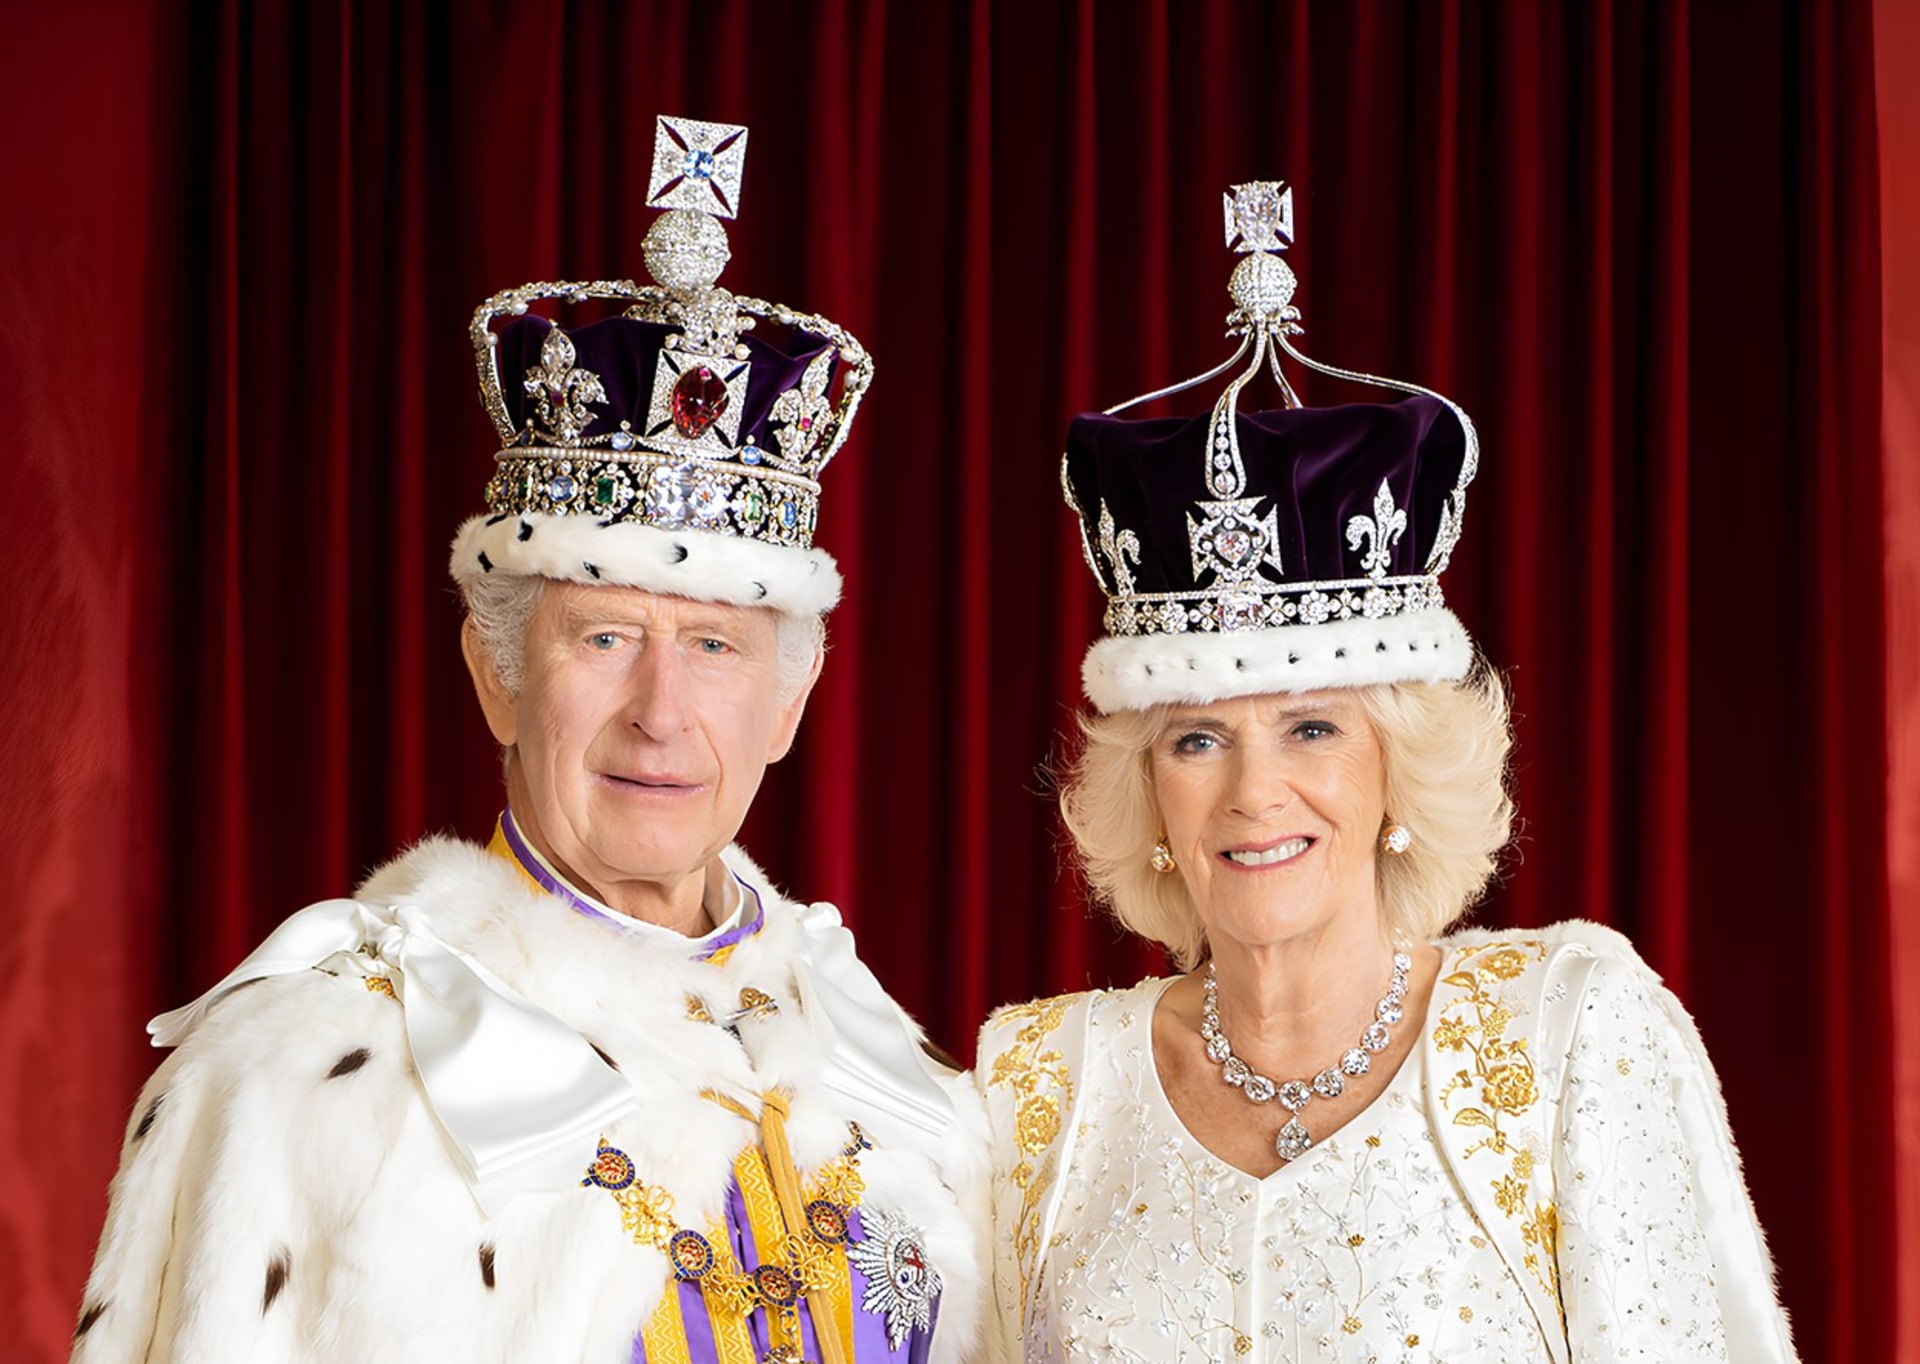 Buckinghamský palác zveřejnil oficiální portrét krále Karla III. a jeho chotě královny Camilly.